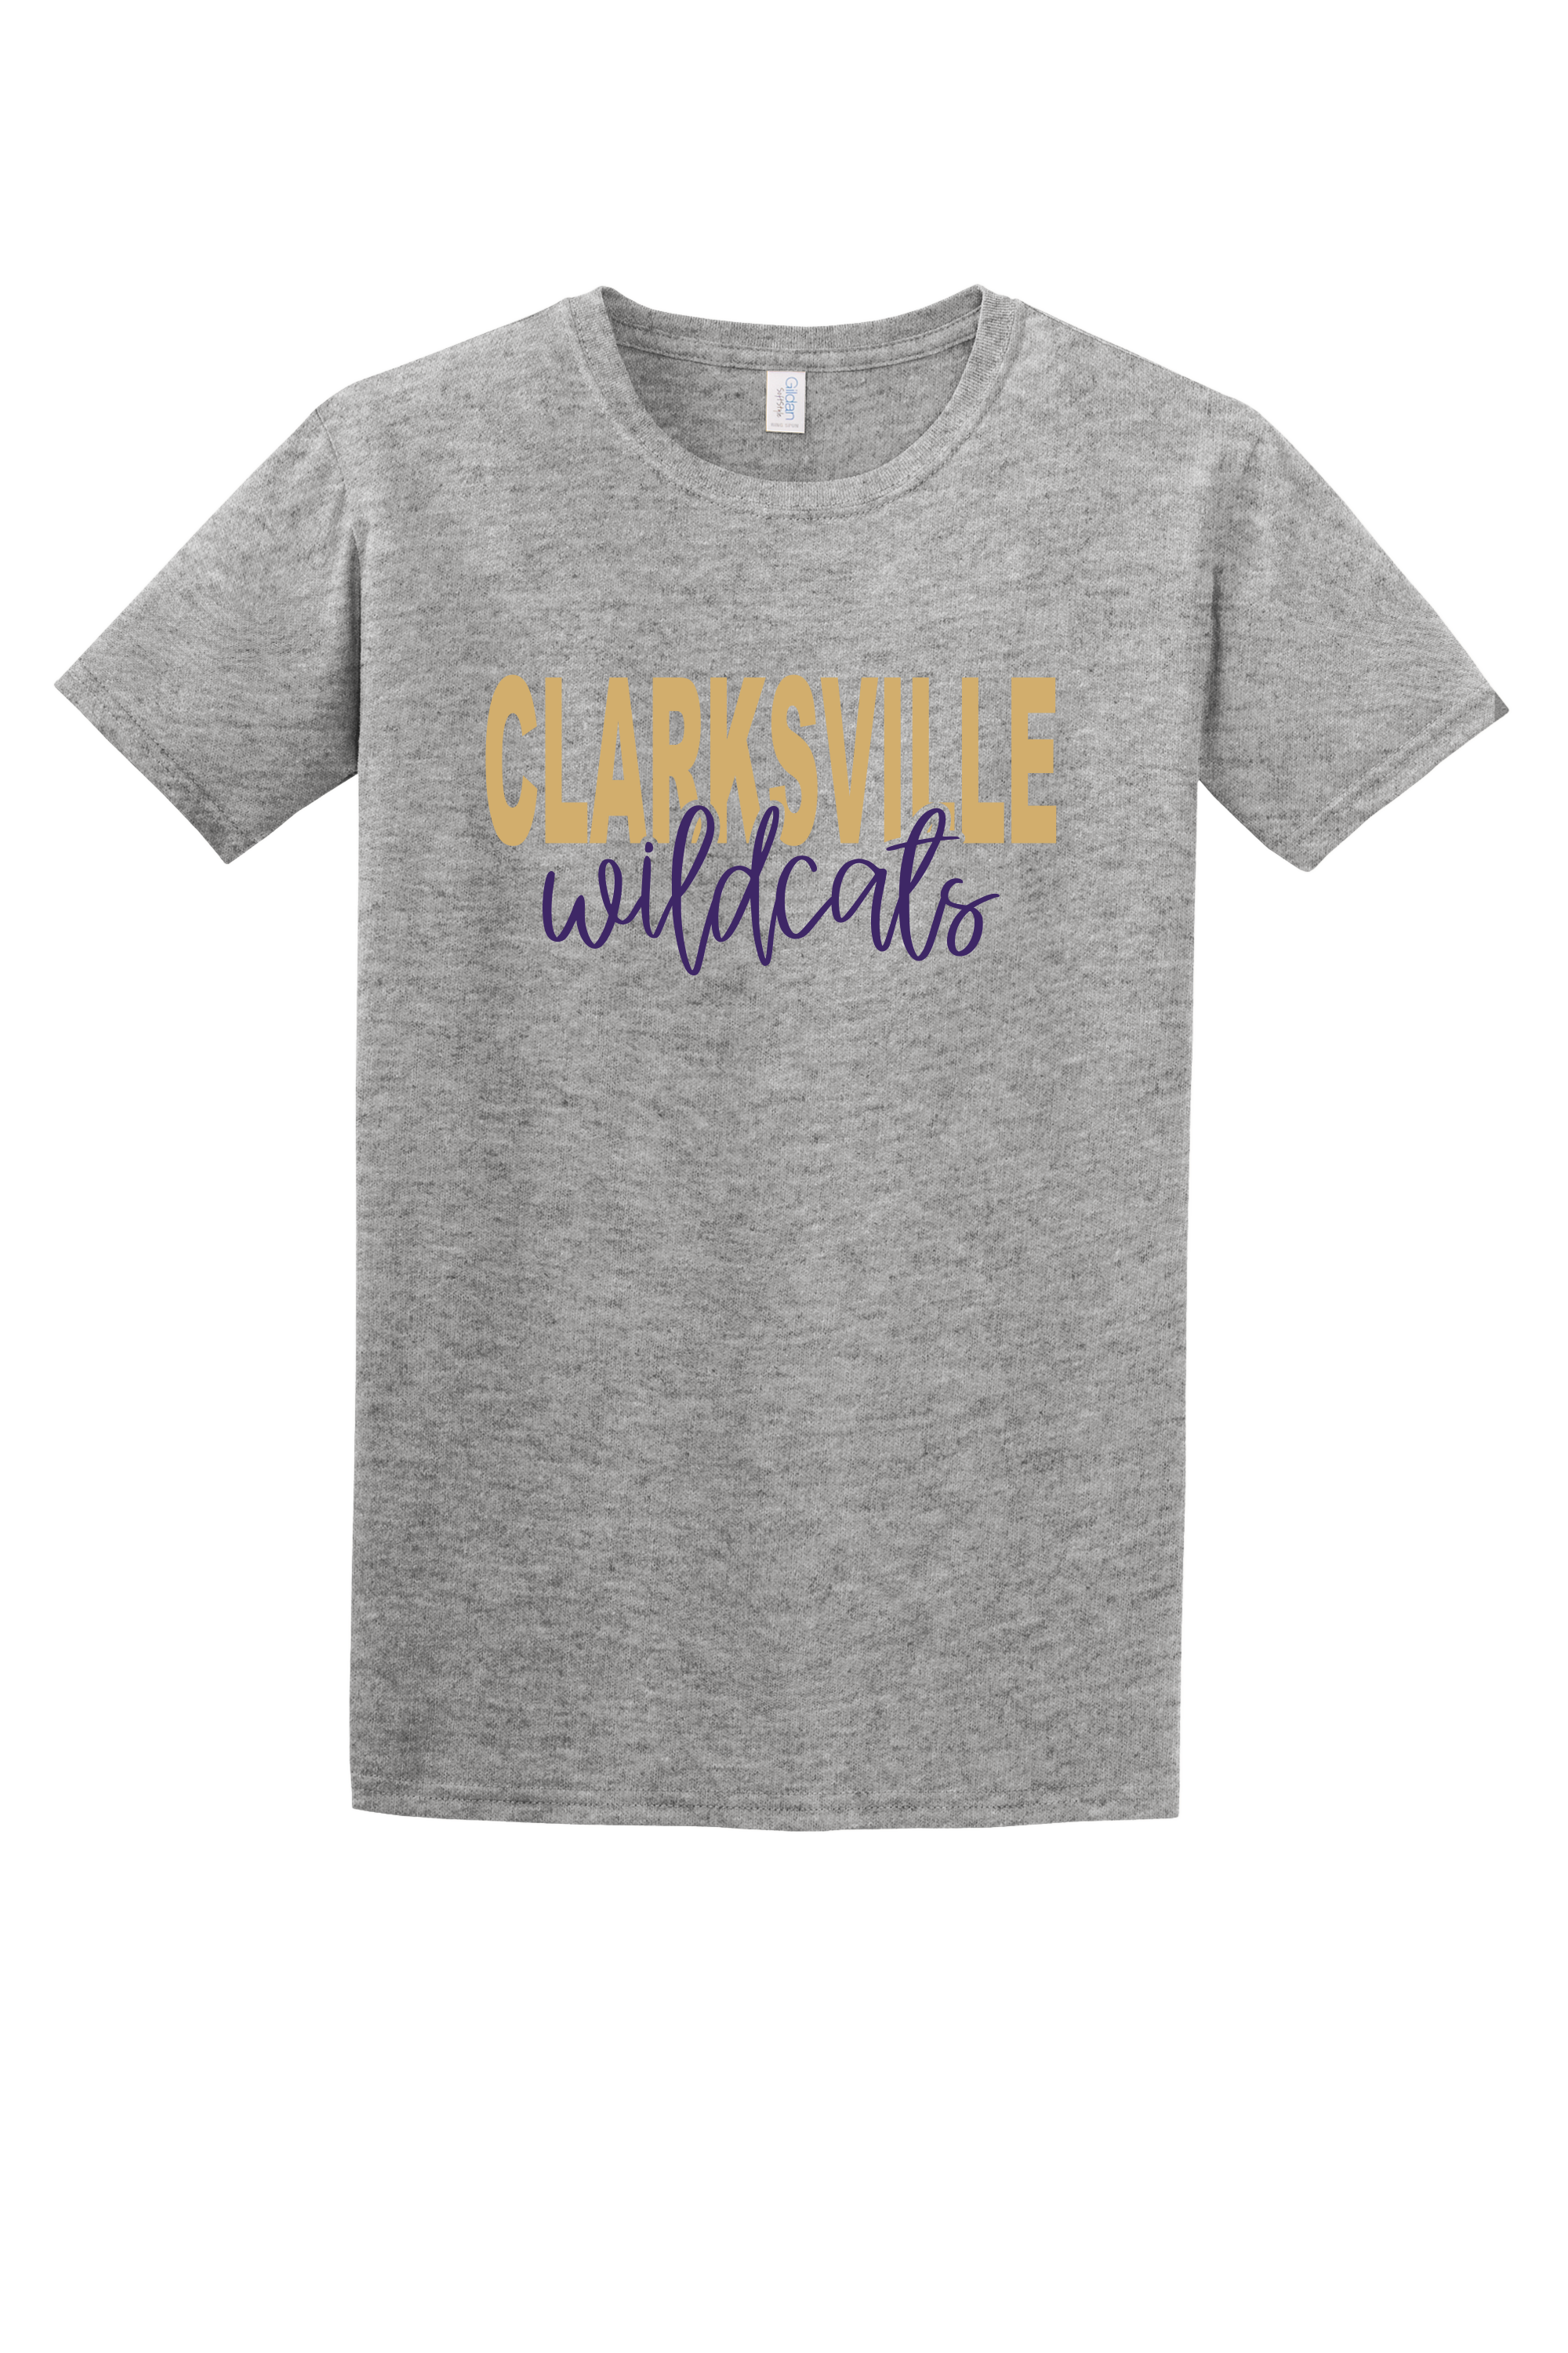 Clarksville Wildcats Tee